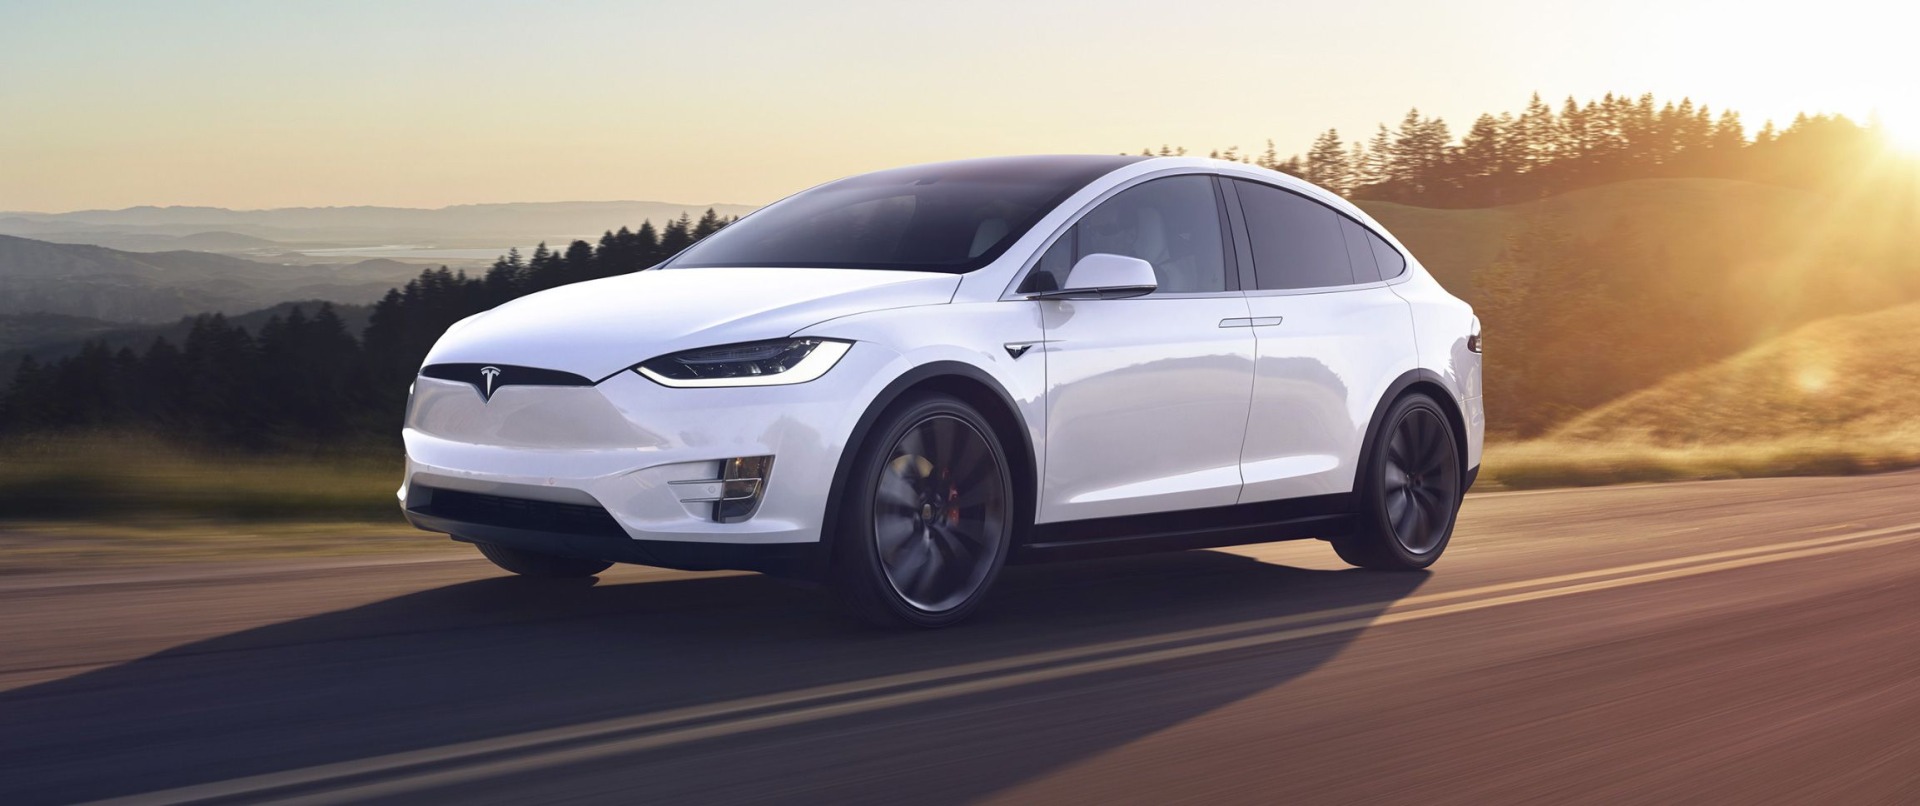 Tesla Keeps On Innovating